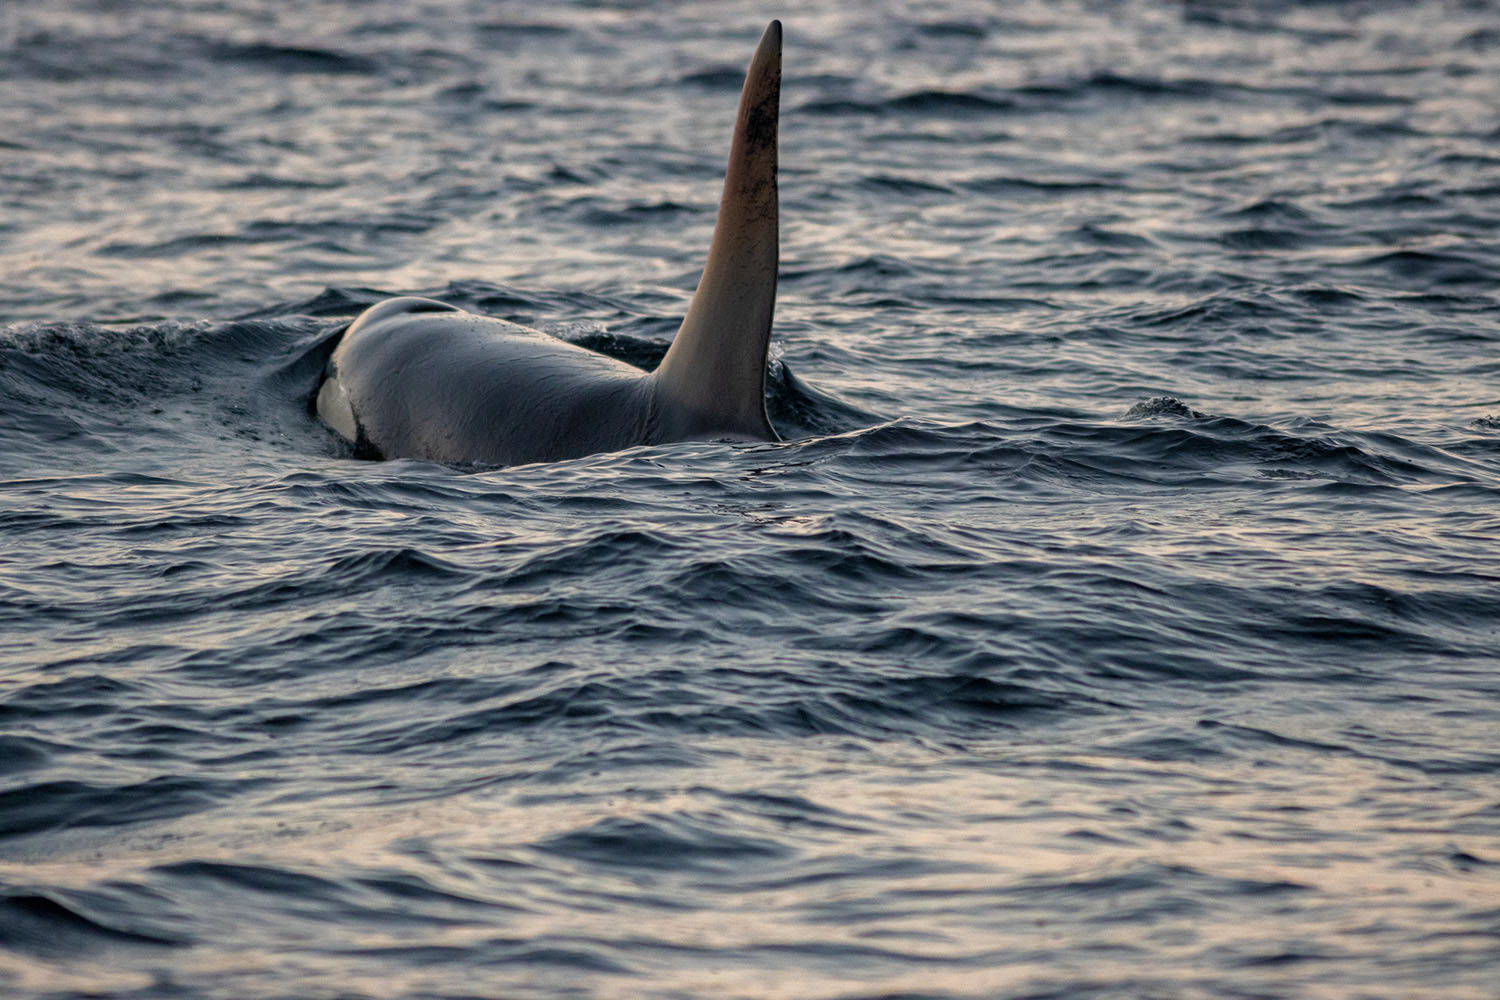 voyage scientifique - orques et baleines a bosse de norvege 55